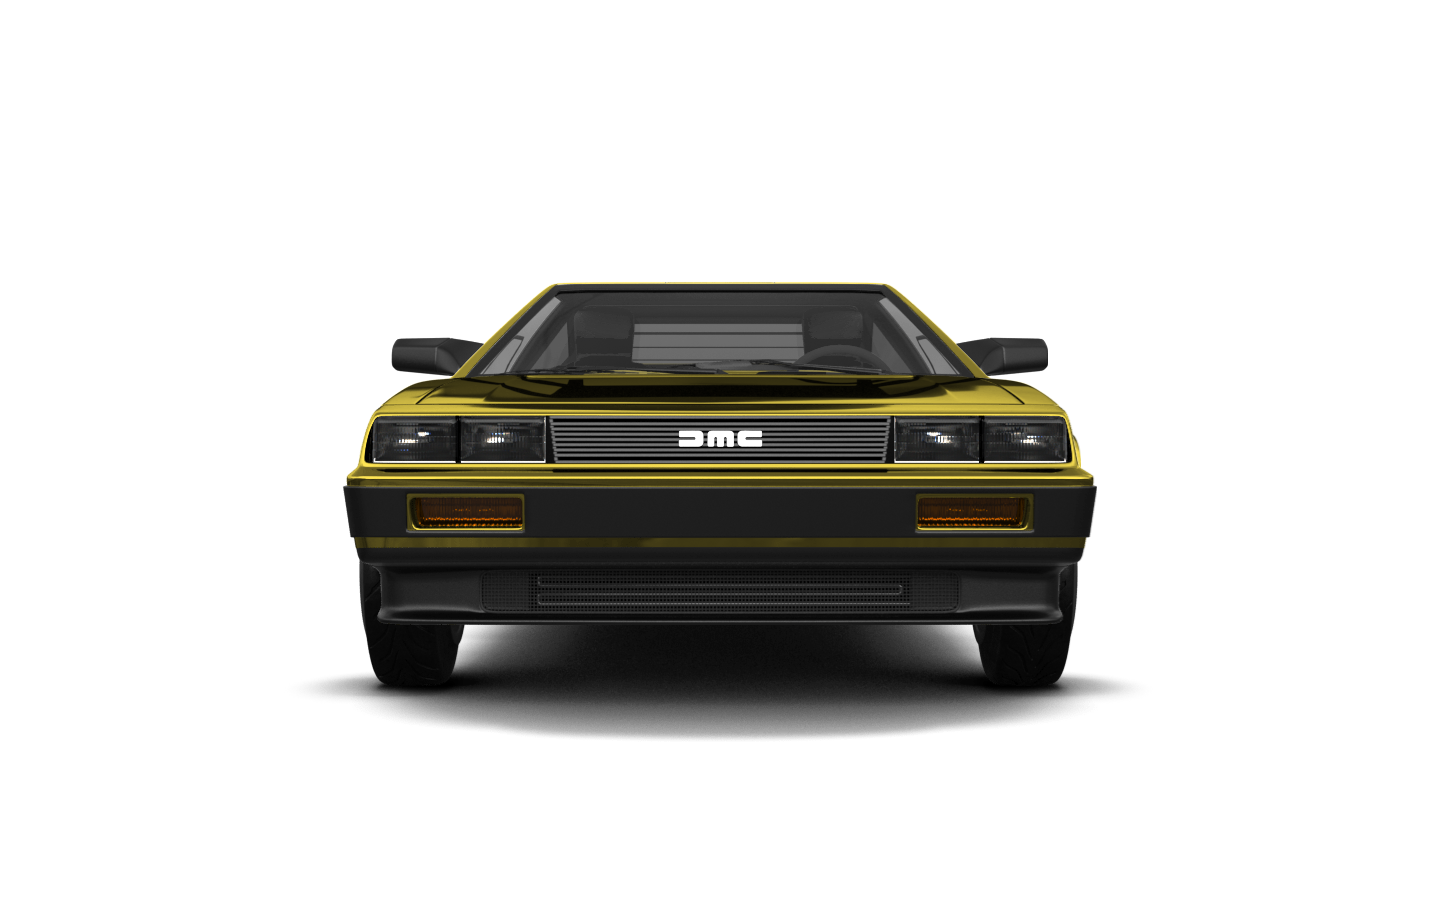 DMC DeLorean 2 Door Coupe 1981